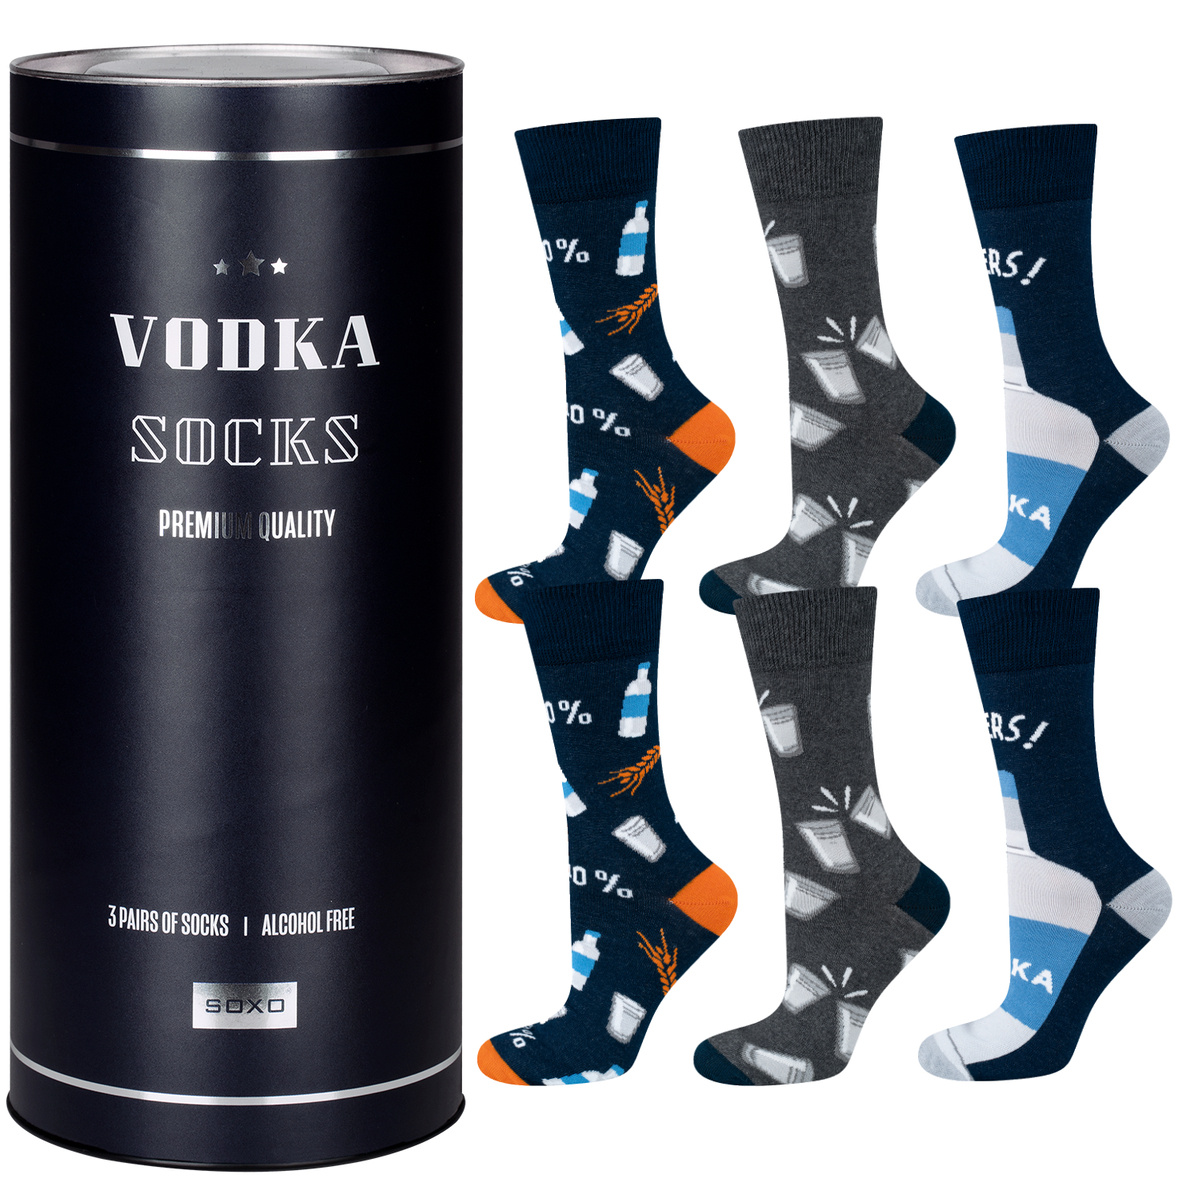 vodka socks